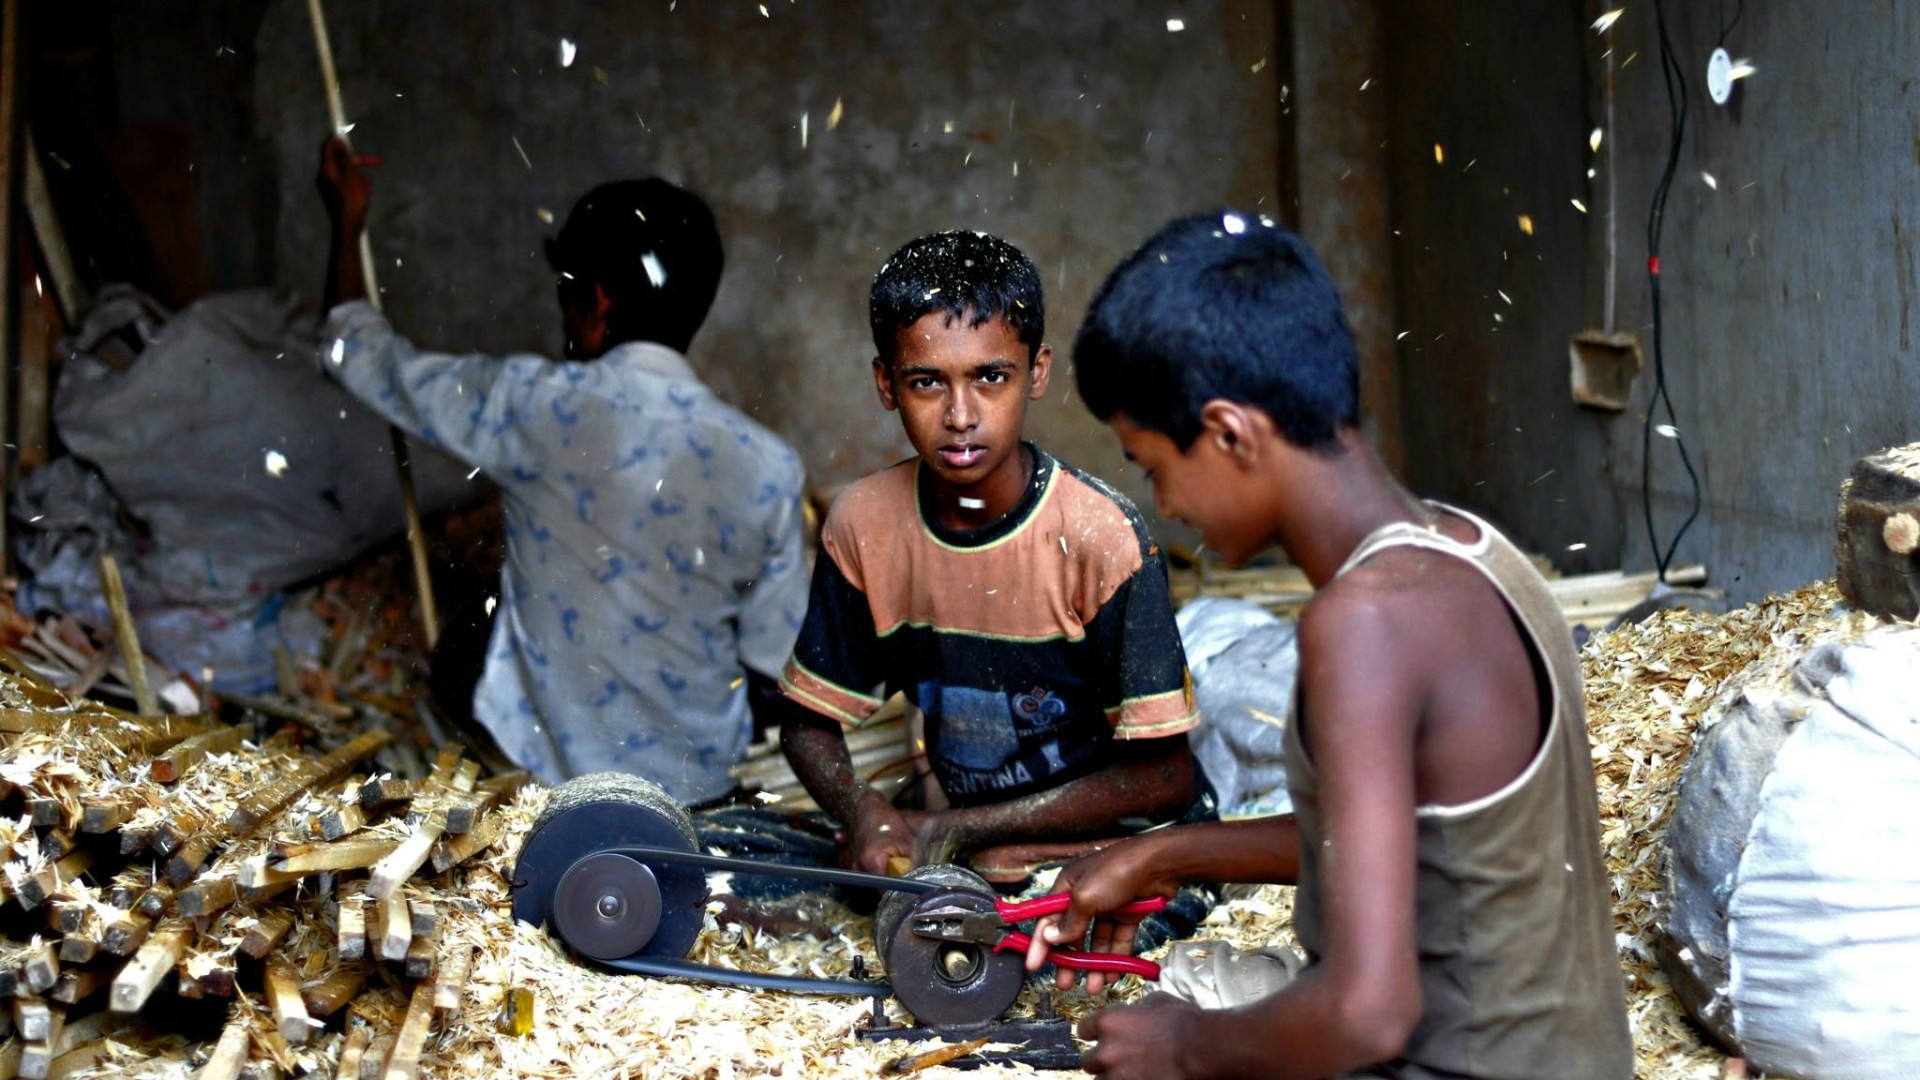 Des millions d'enfants sont exploités dans l'industrie, au Bangladesh (Photo:Naser I Hossain/Flickr/CC BY-NC 2.0)